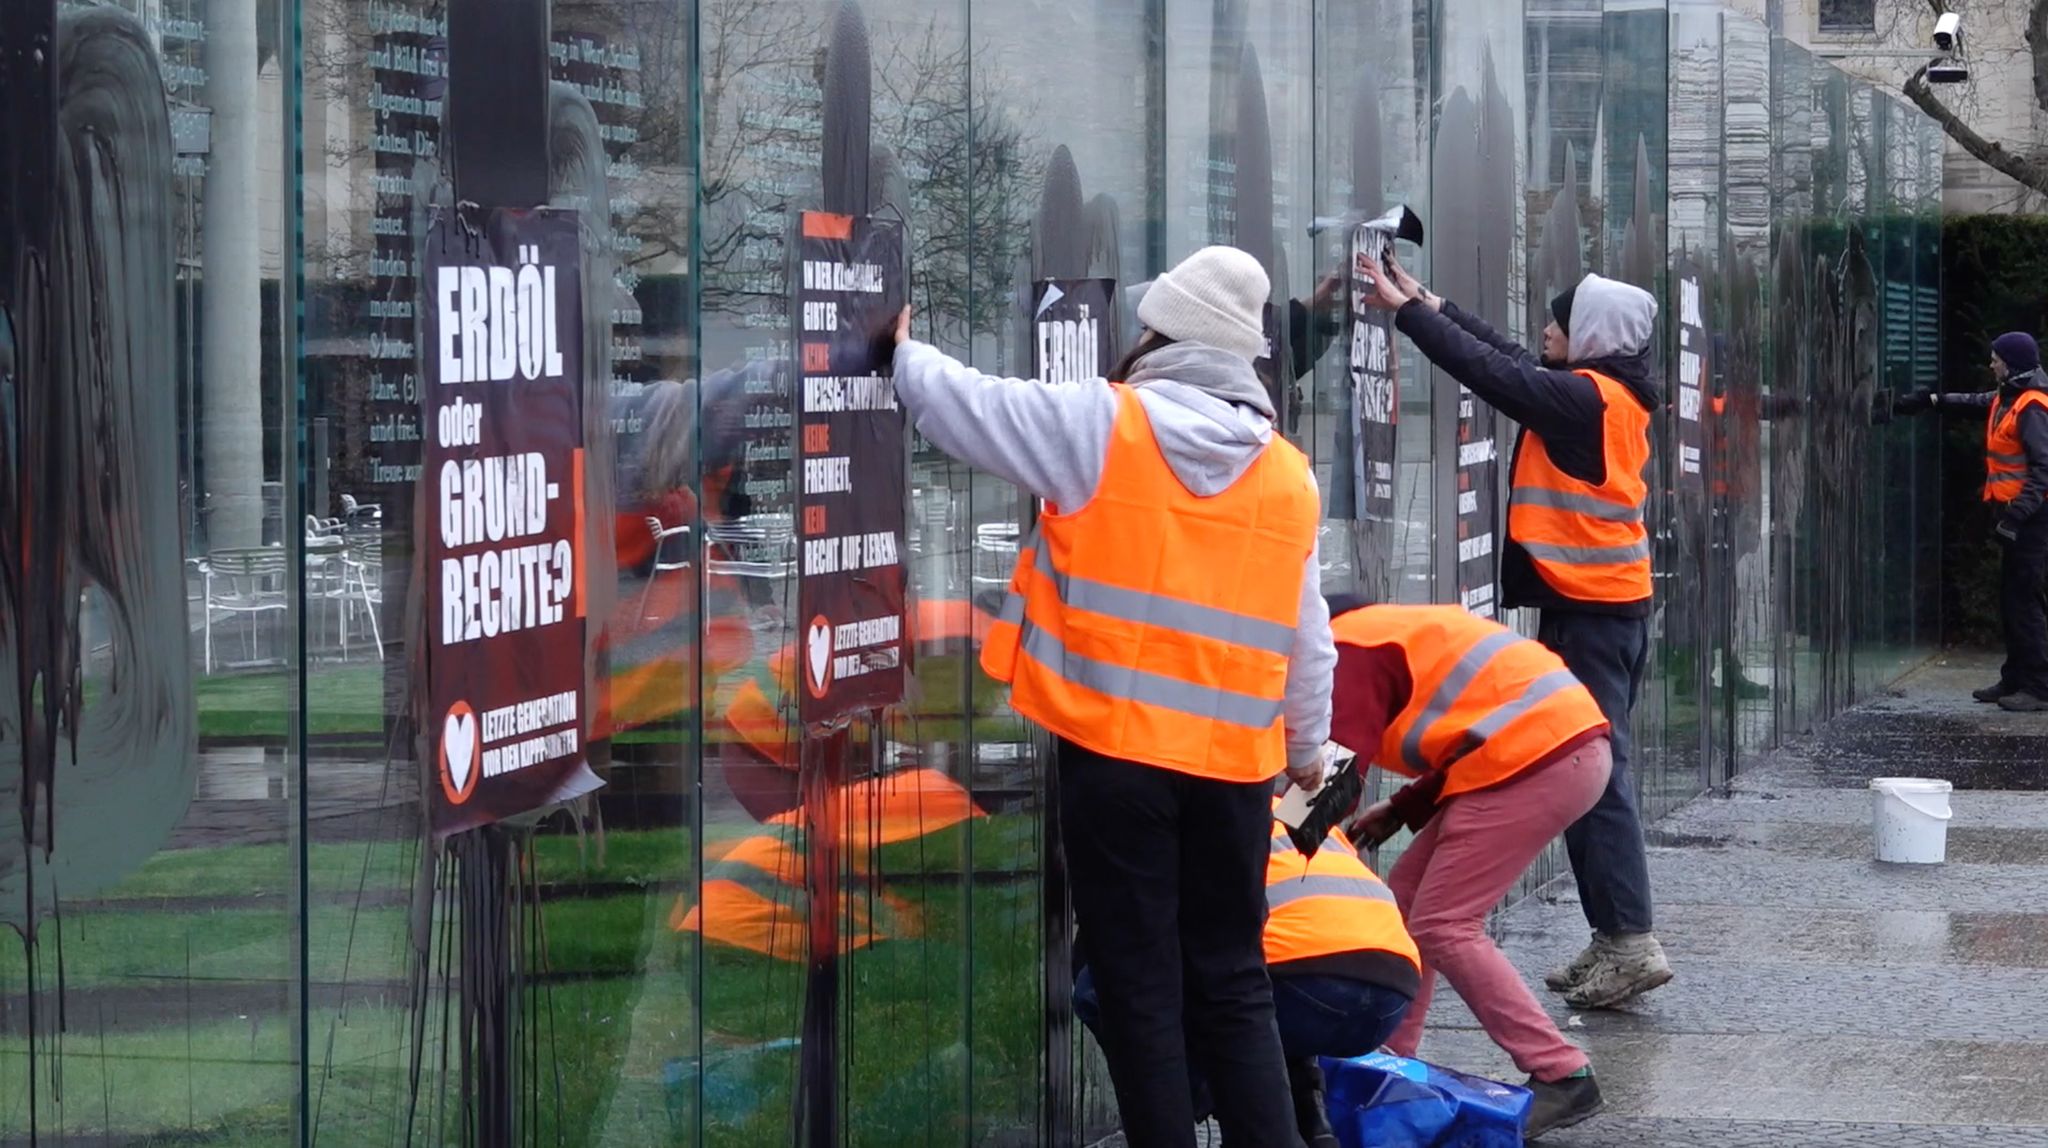 Klimaaktivisten der "Letzten Generation" beschmieren und plakatieren gläserne Grundgesetz-Skulptur am Bundestag.